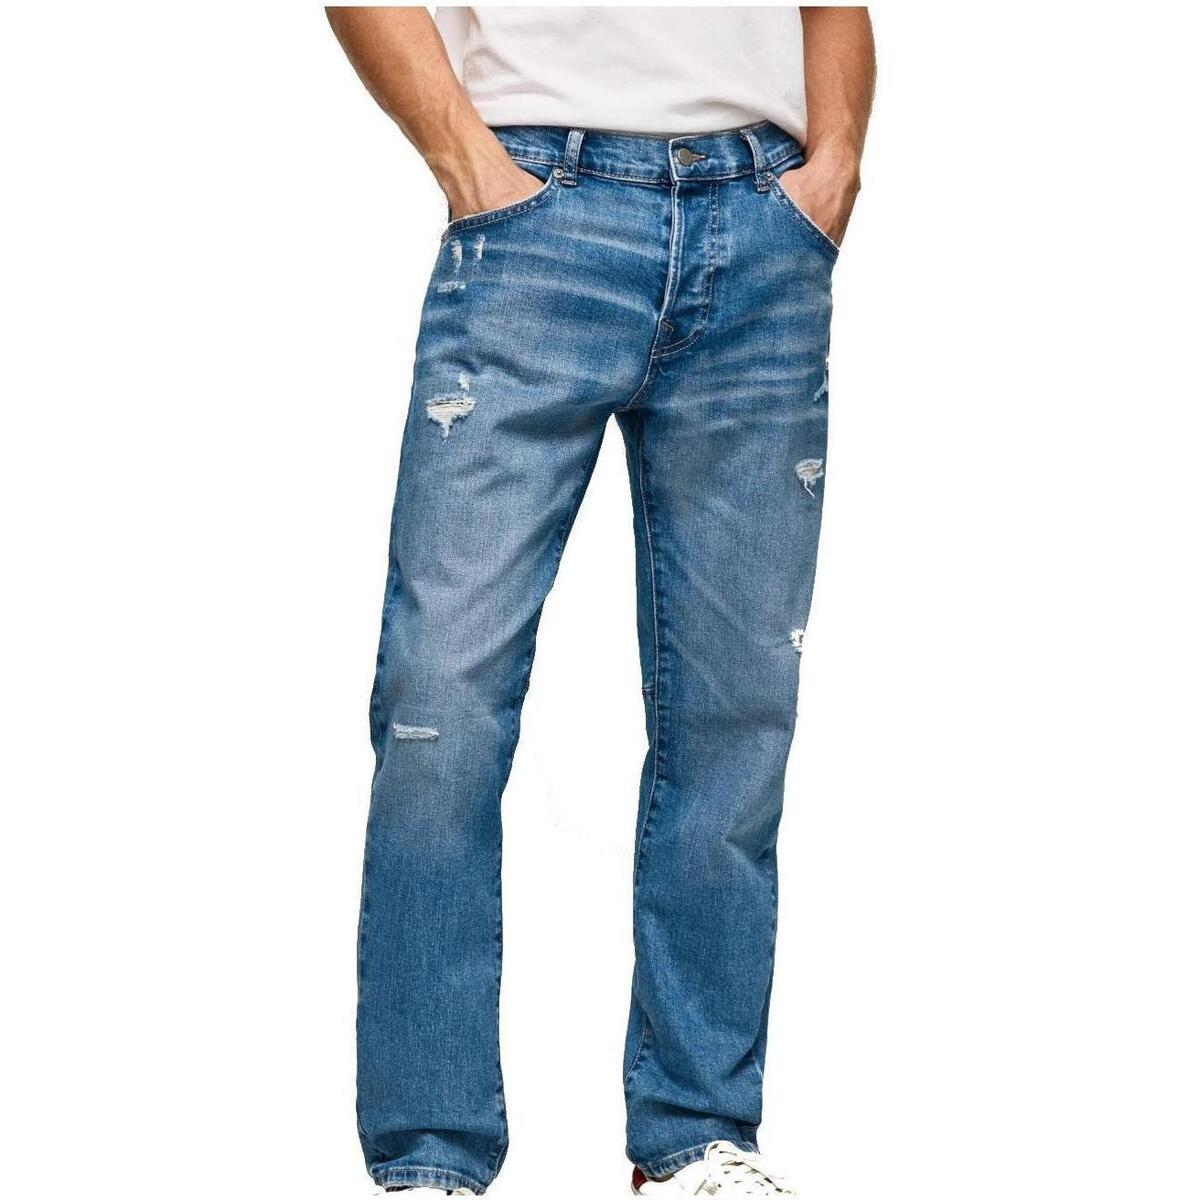 textil Herr Jeans Pepe jeans  Blå